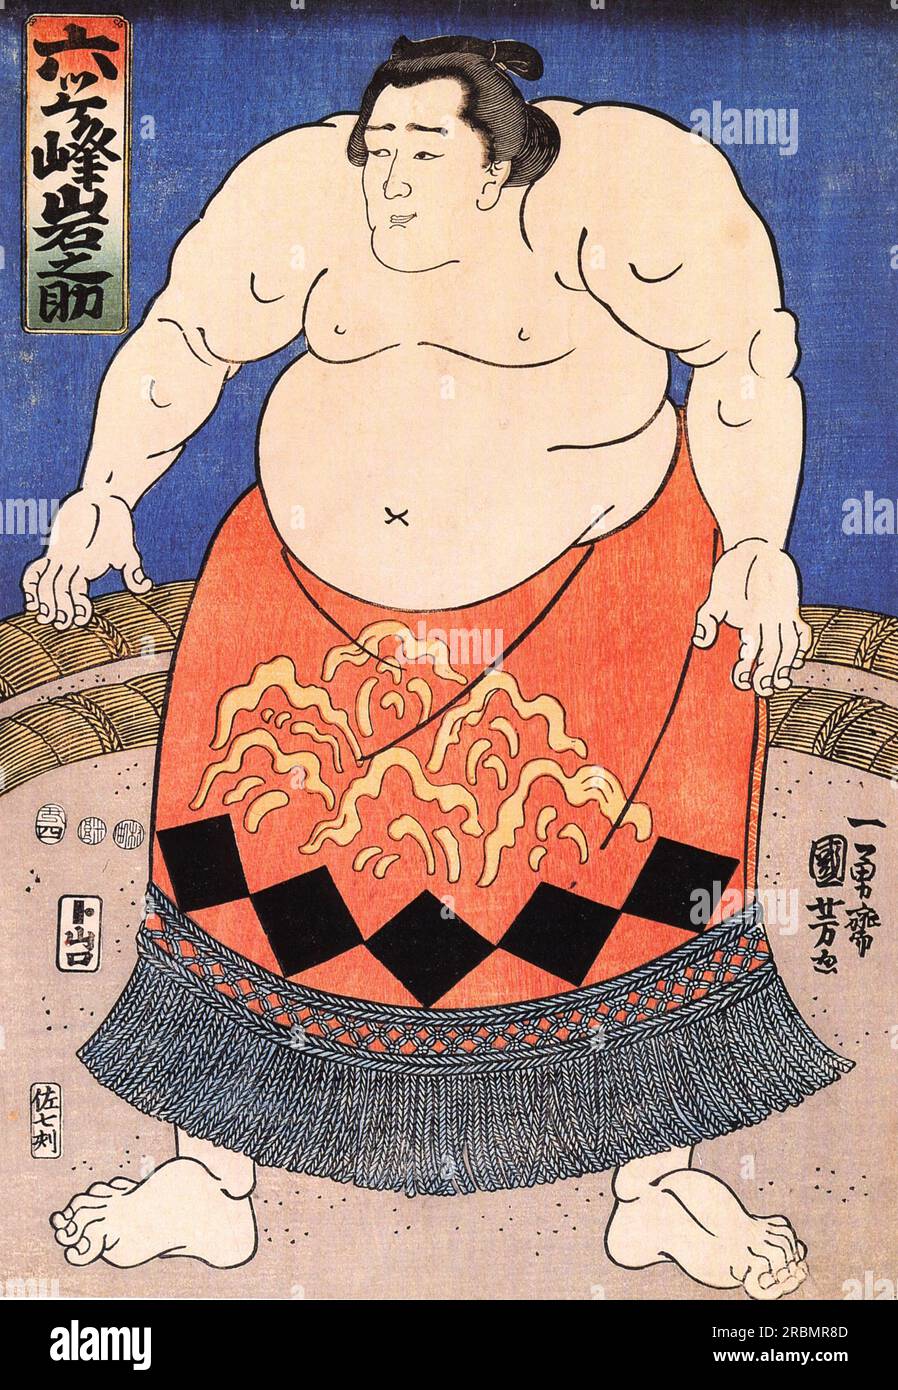 The sumo wrestler by Utagawa Kuniyoshi Stock Photo